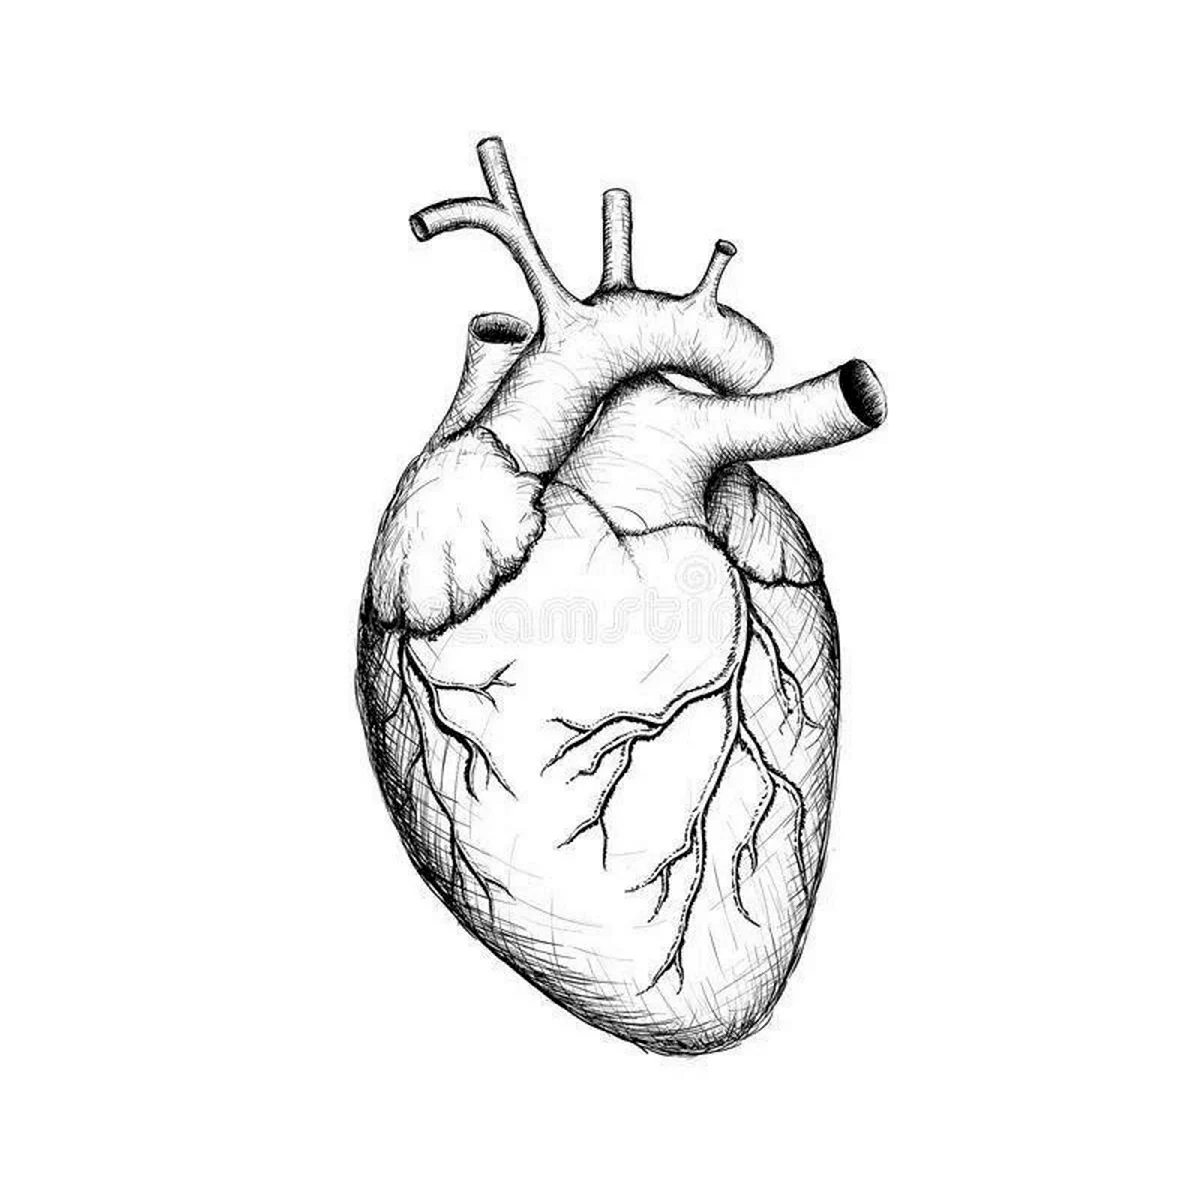 Сердце человека карандашом для срисовки. Для срисовки